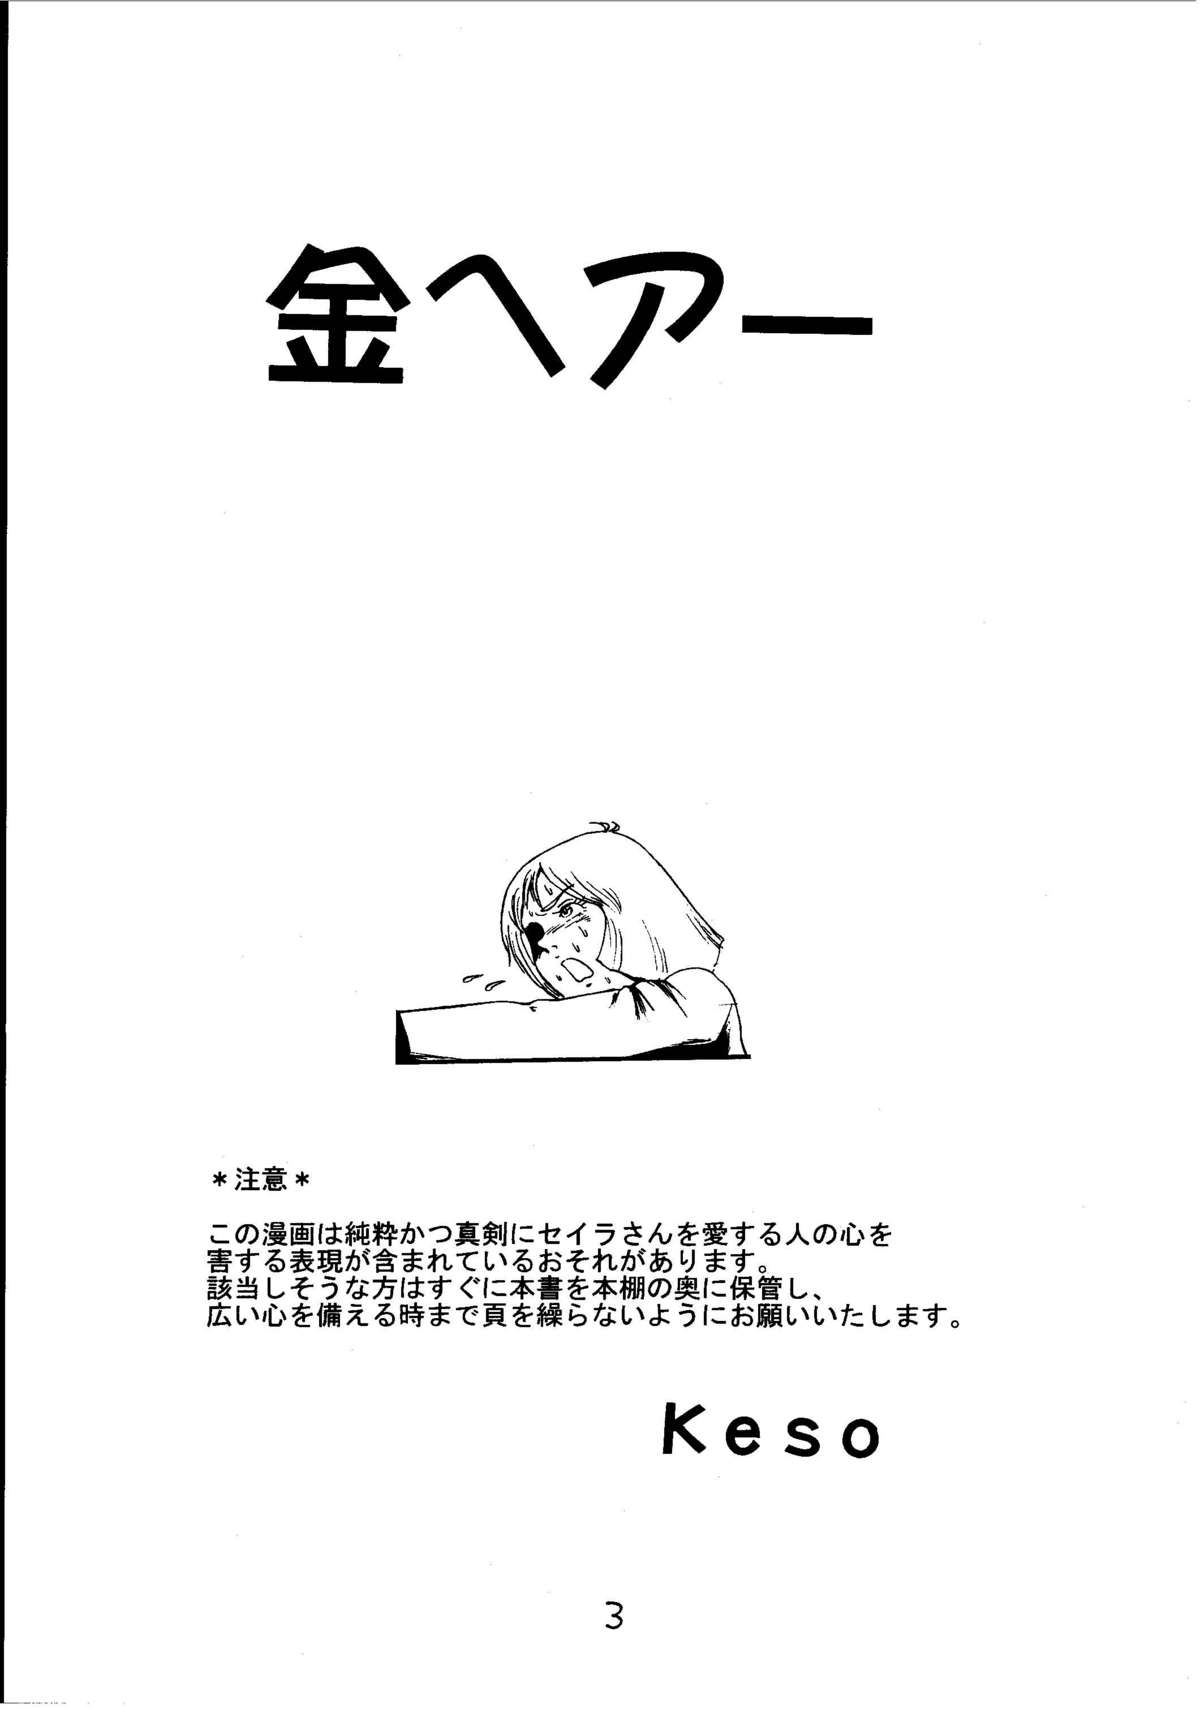 [スカートつき (keso)] 金ヘアー 改訂版 (機動戦士ガンダム)